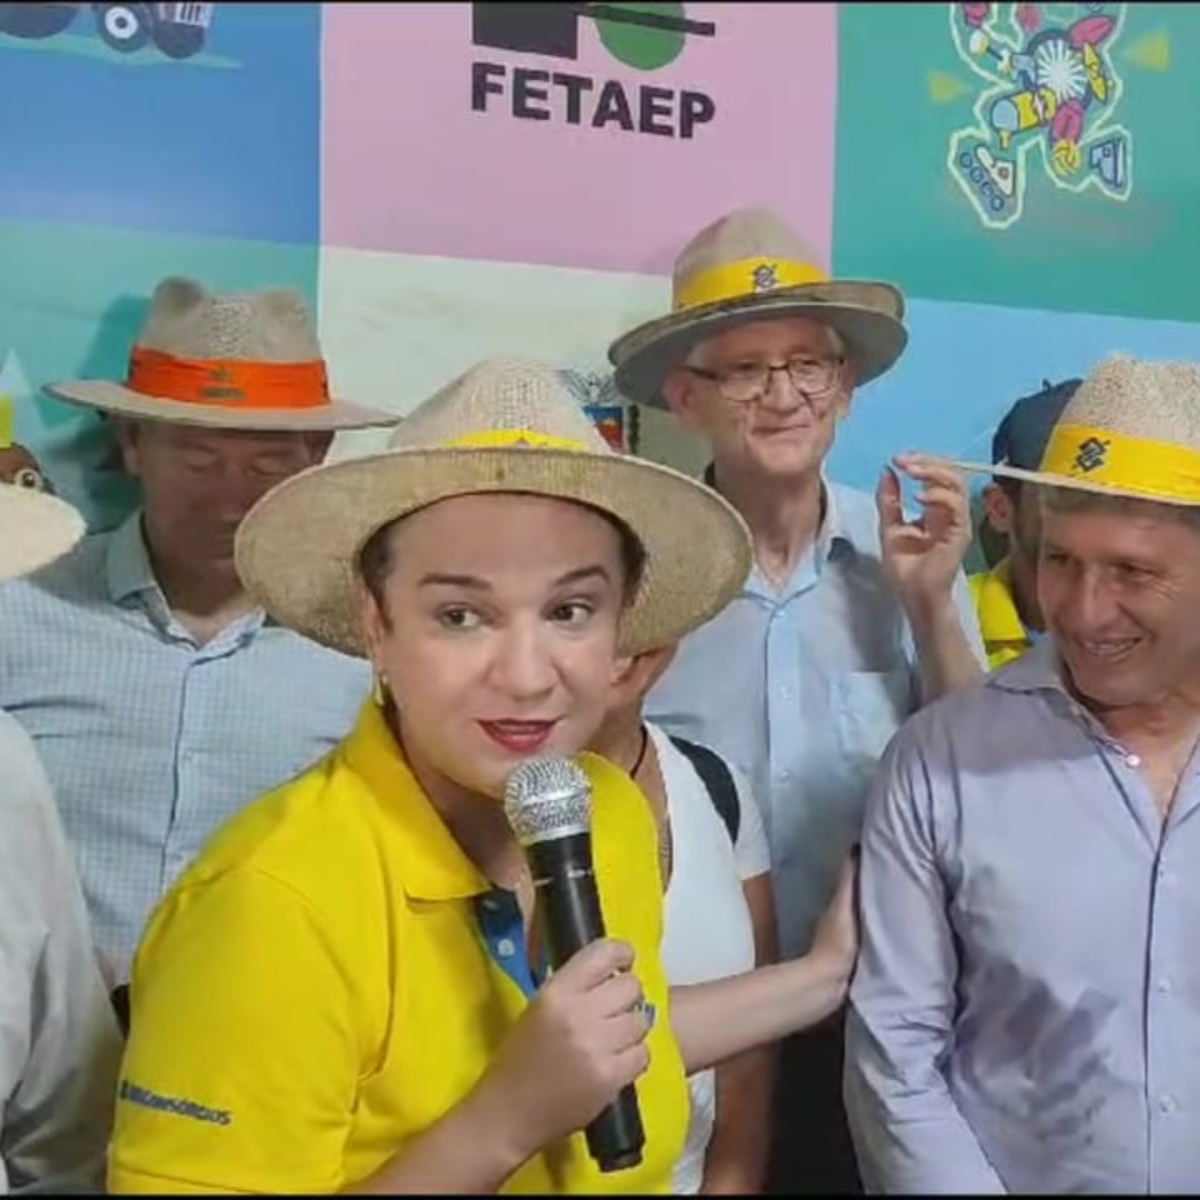  presidente banco do Brasil show rural 